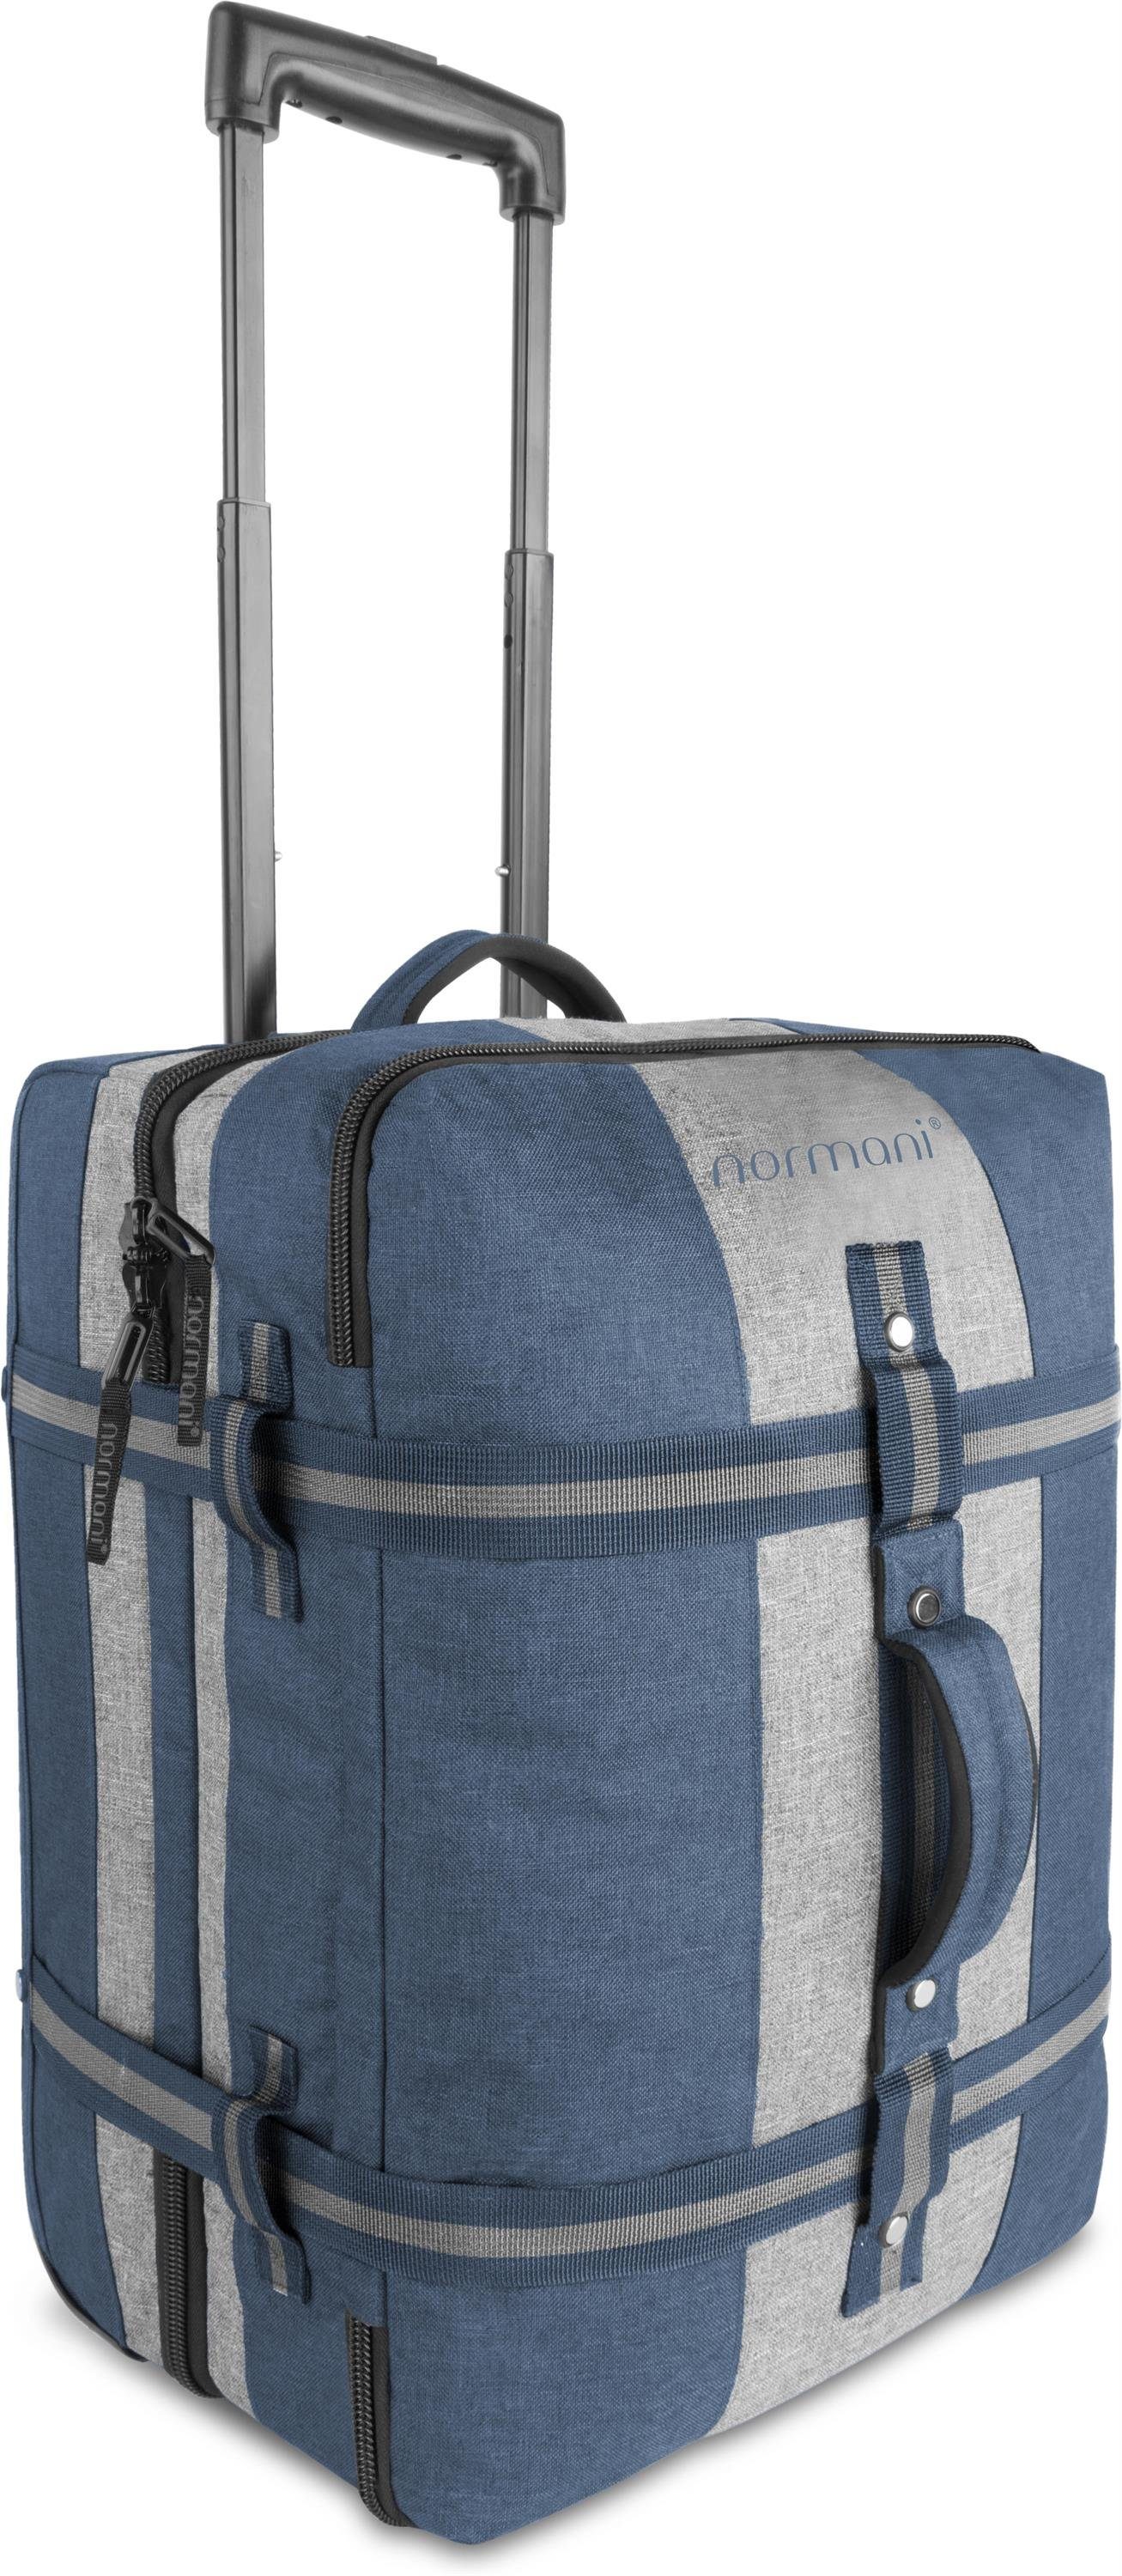 normani Reisetasche Reisetasche mit Handgepäckmaß Aurori 45, Trolley mit clevere Fächeraufteilung Blau/Grau